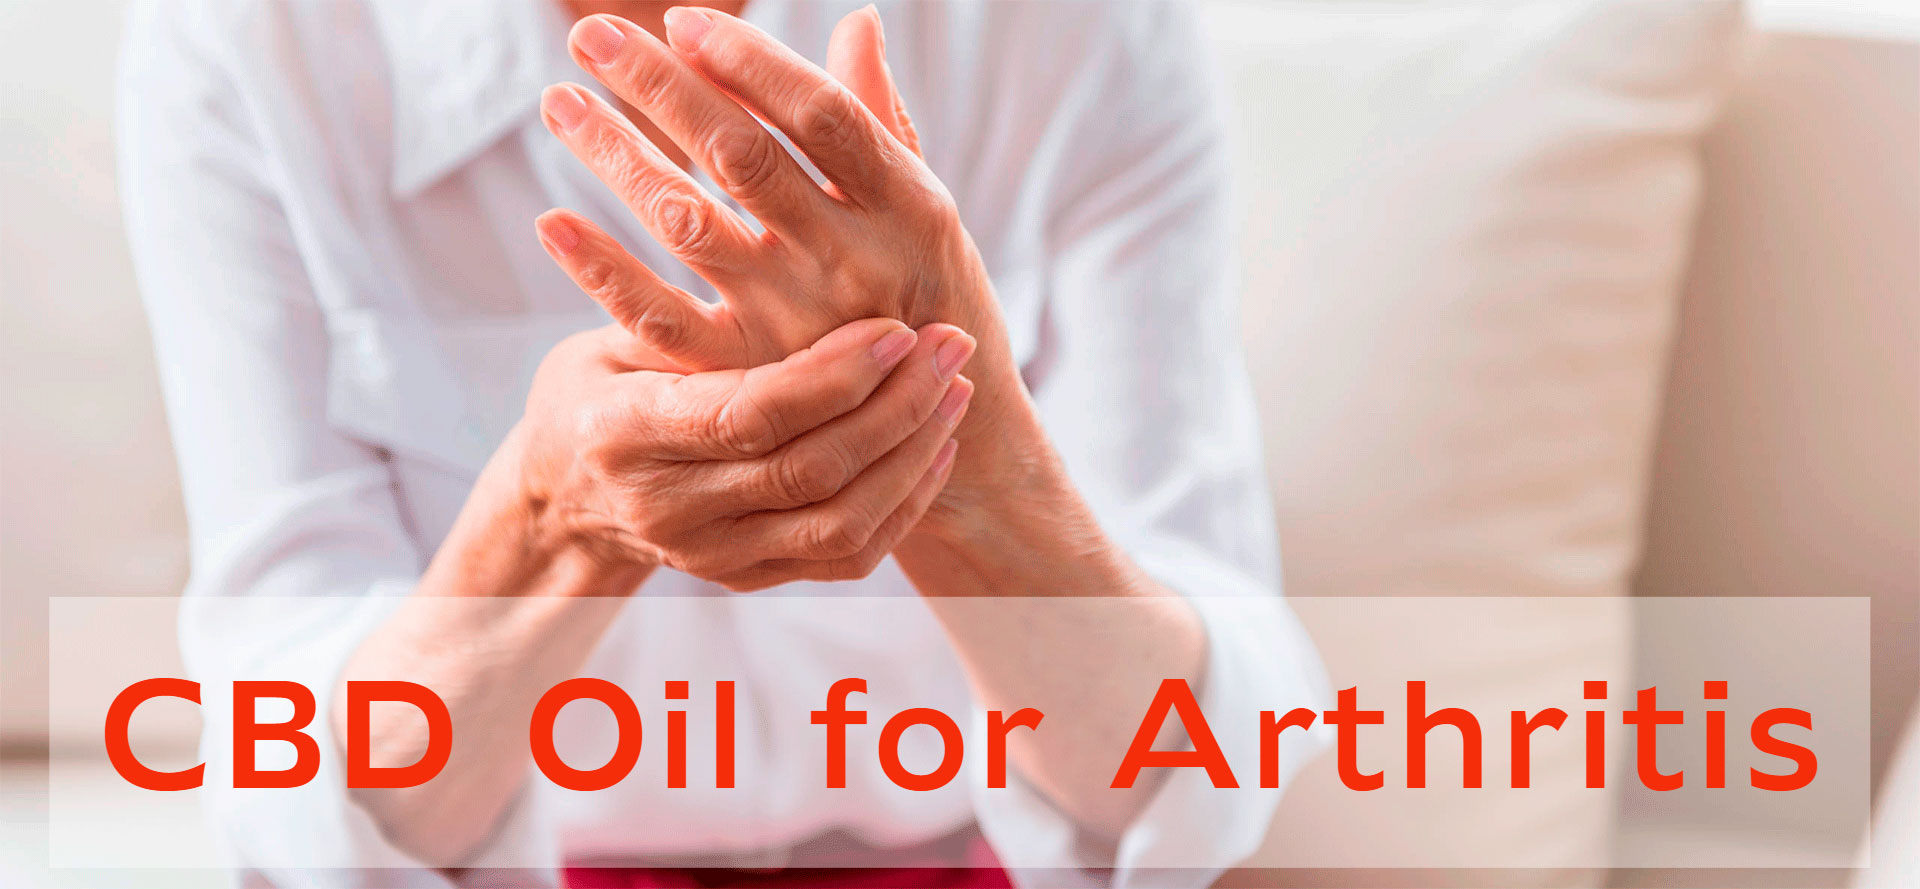 CBD Oil for Arthritis.